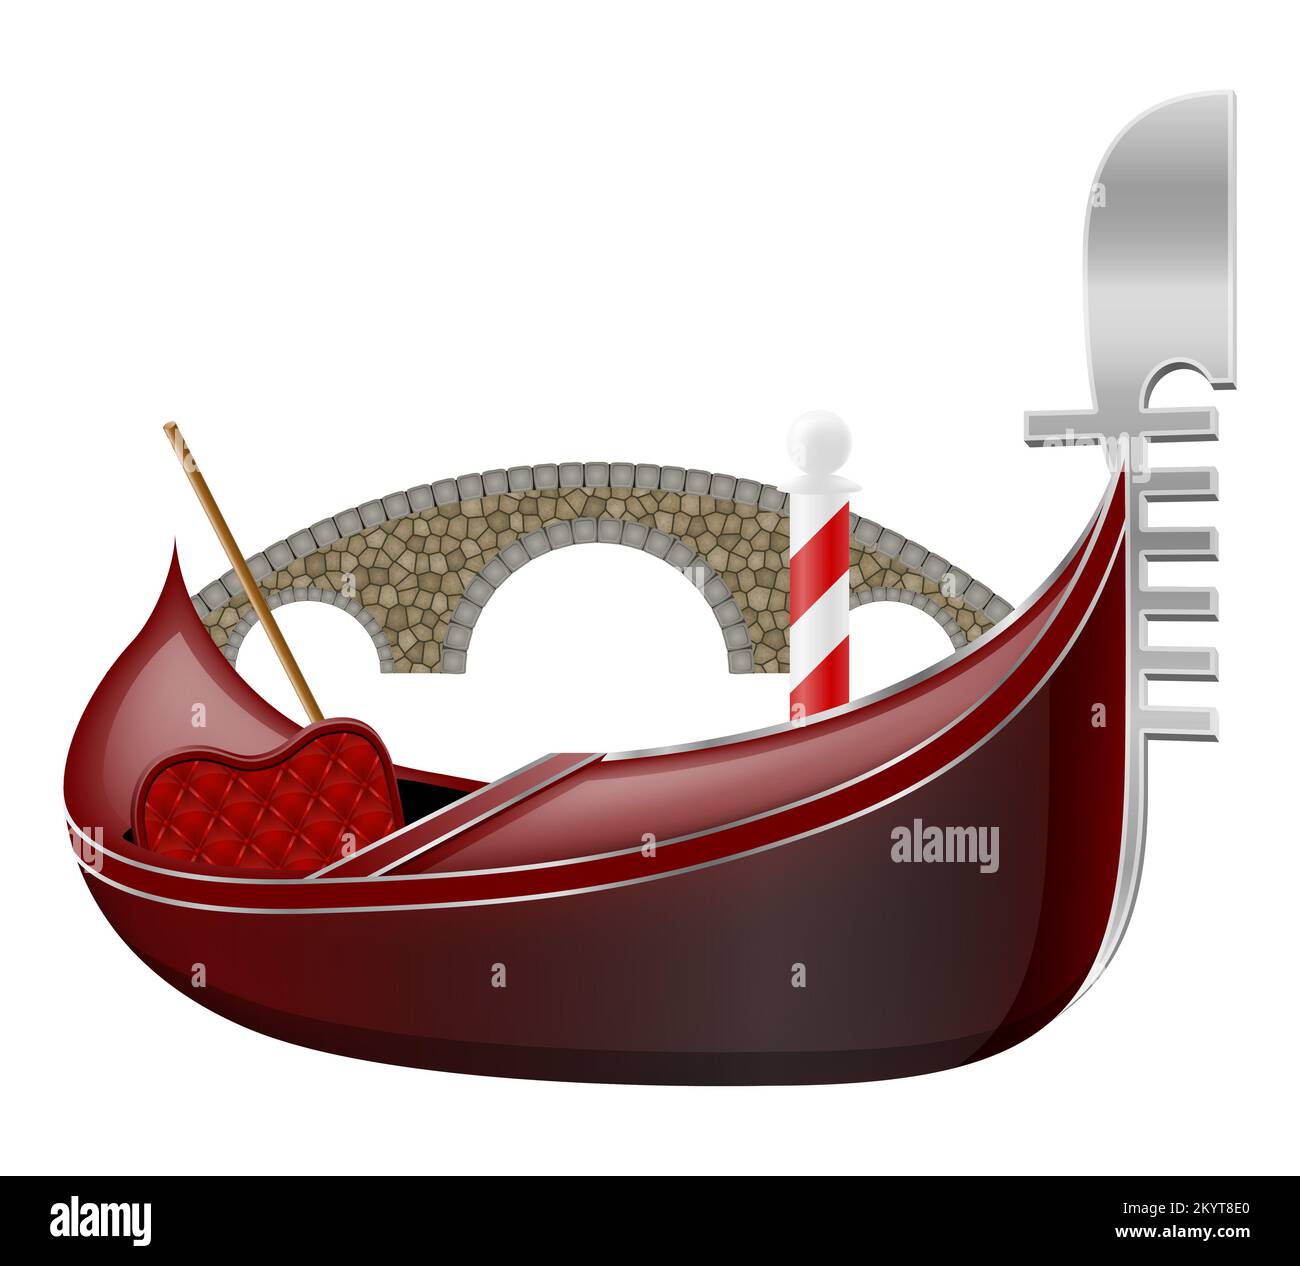 télécabine traditionnelle italienne bateau à venise illustration vectorielle isolée sur fond blanc Banque D'Images